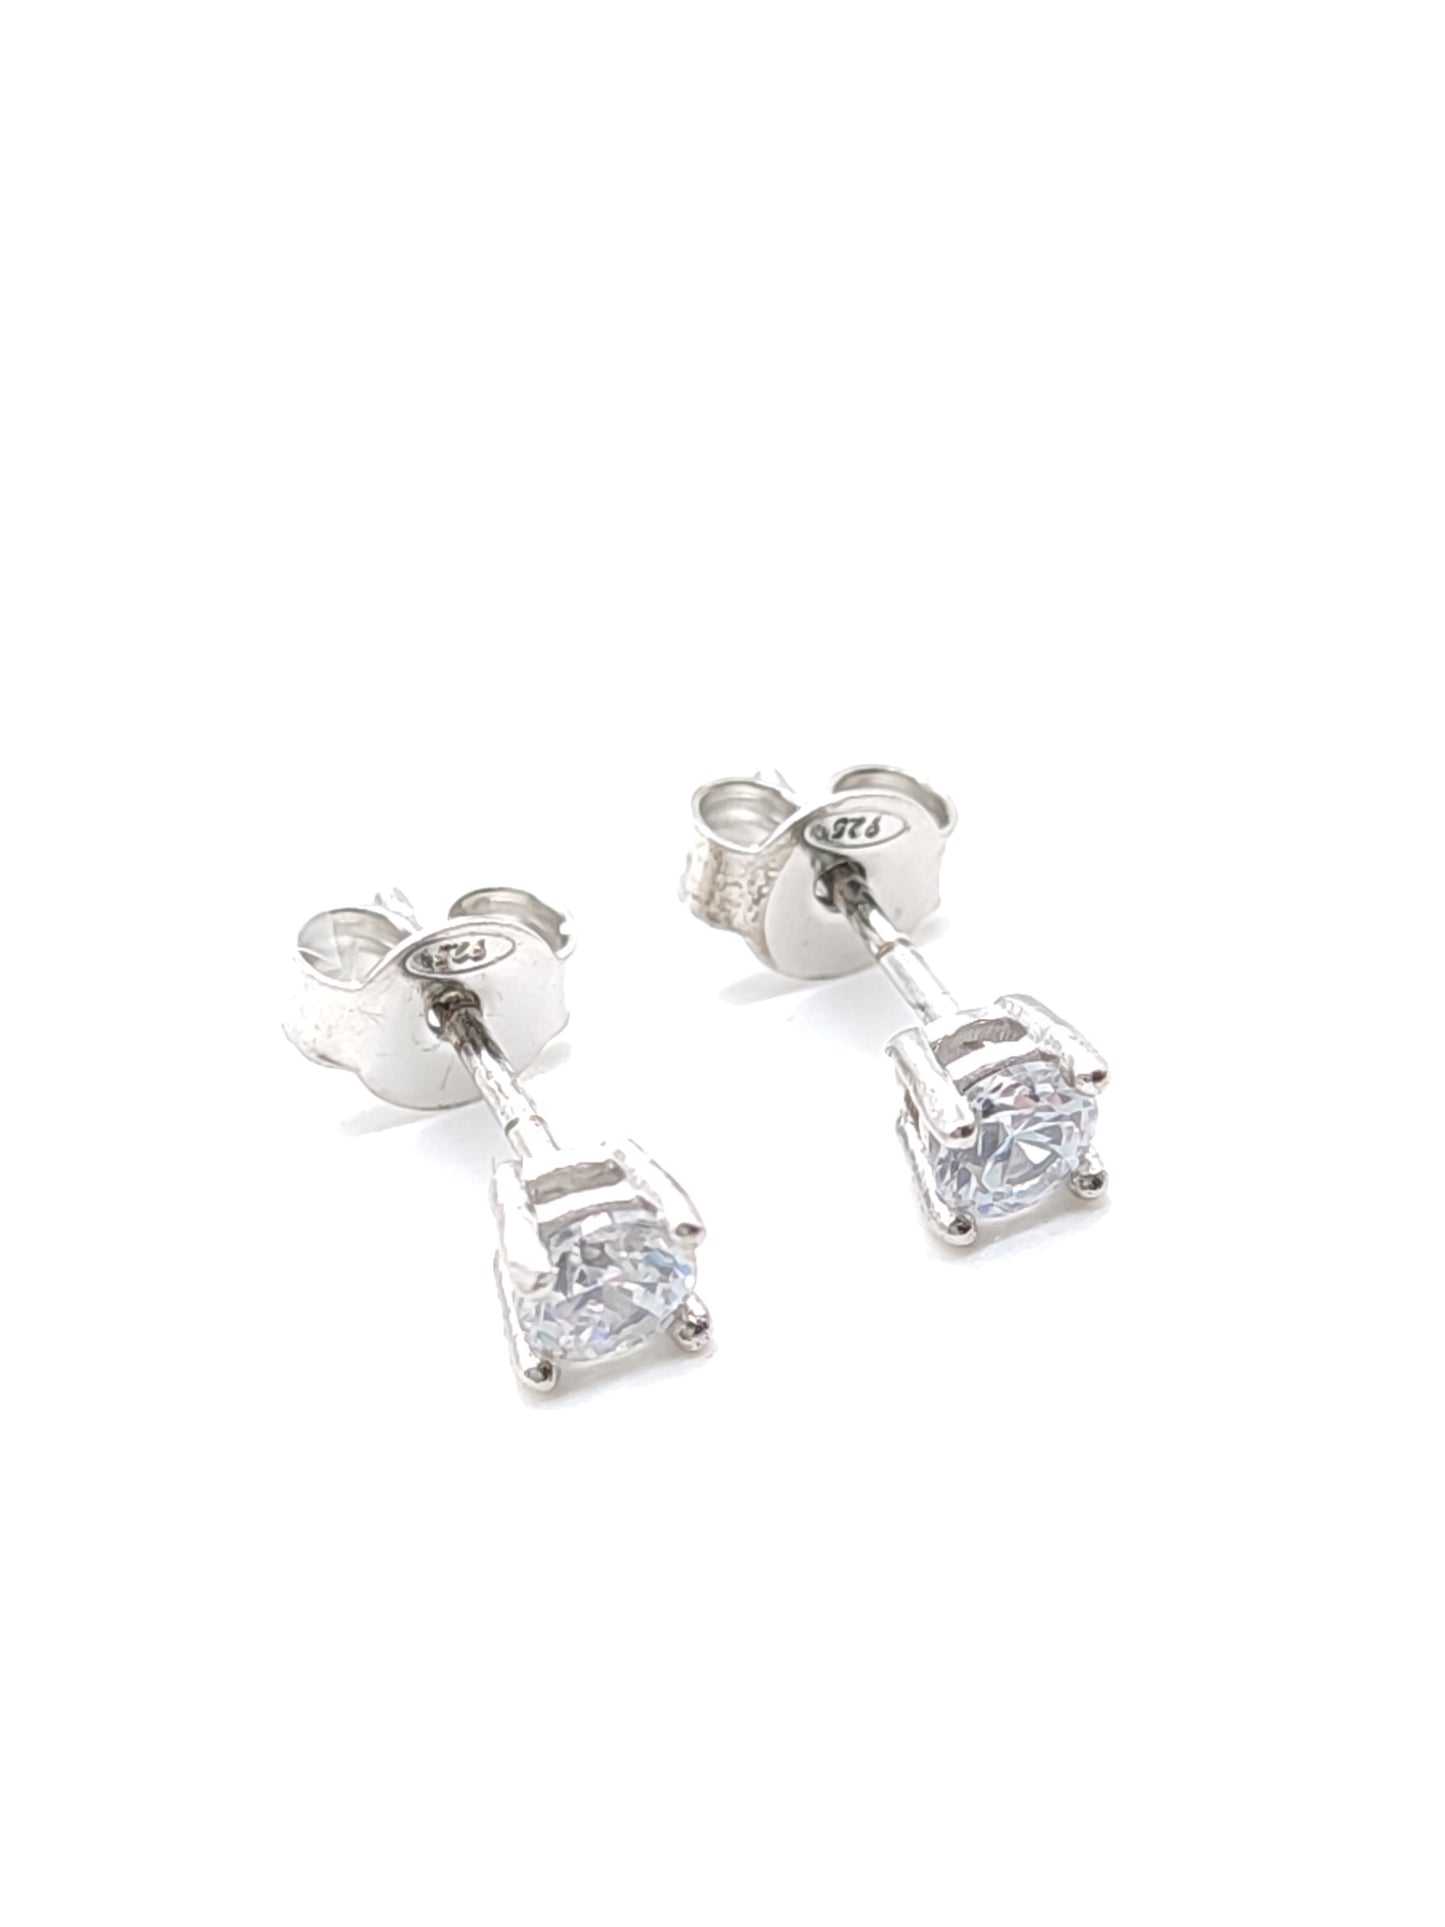 Light-point lobe earrings in silver with zircons